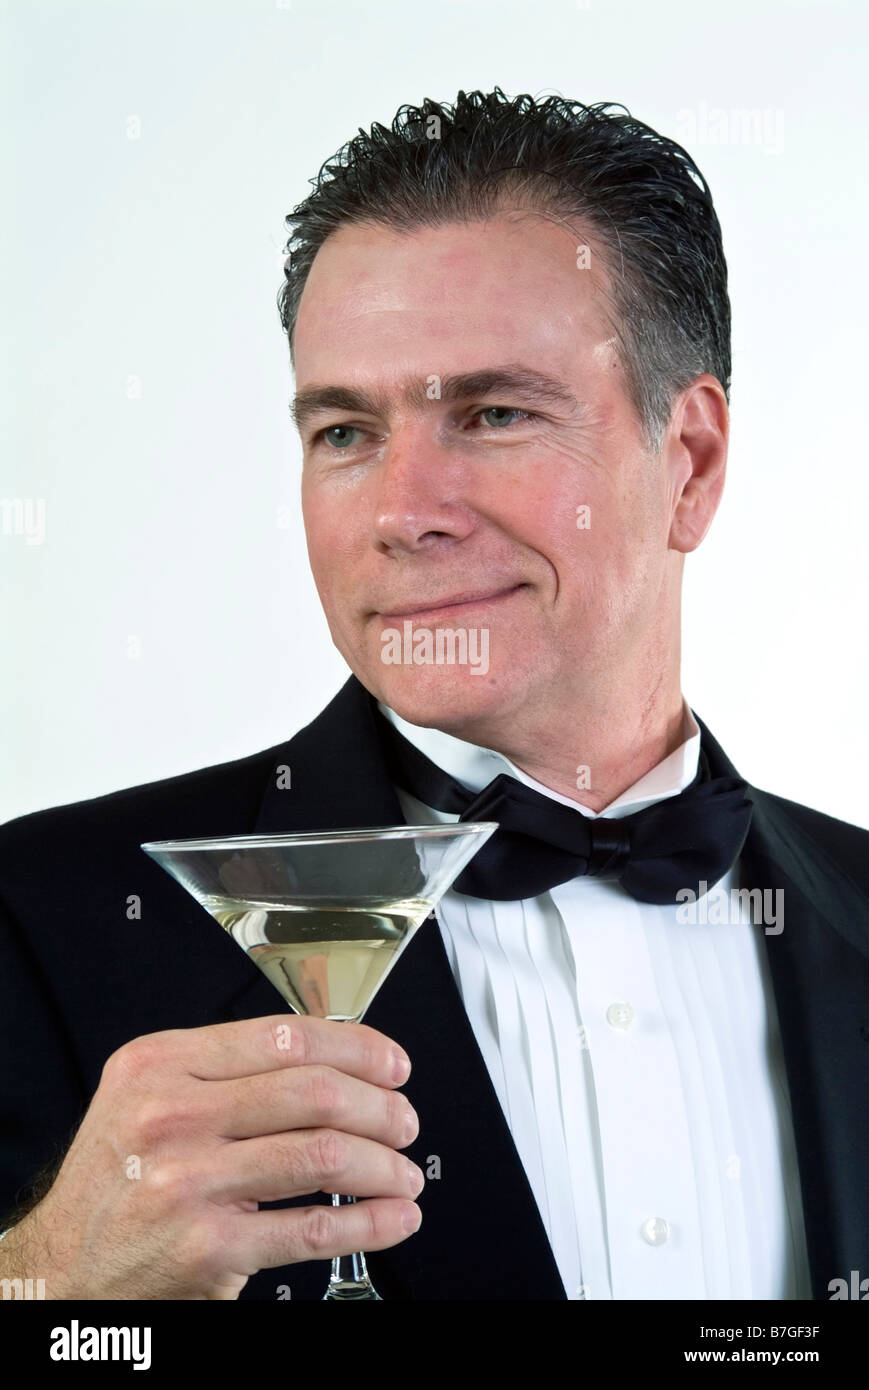 Ein Mann in formelle Kleidung mit einem liebevollen Ausdruck auf seinem Gesicht und einem Martini-Glas in der hand Stockfoto